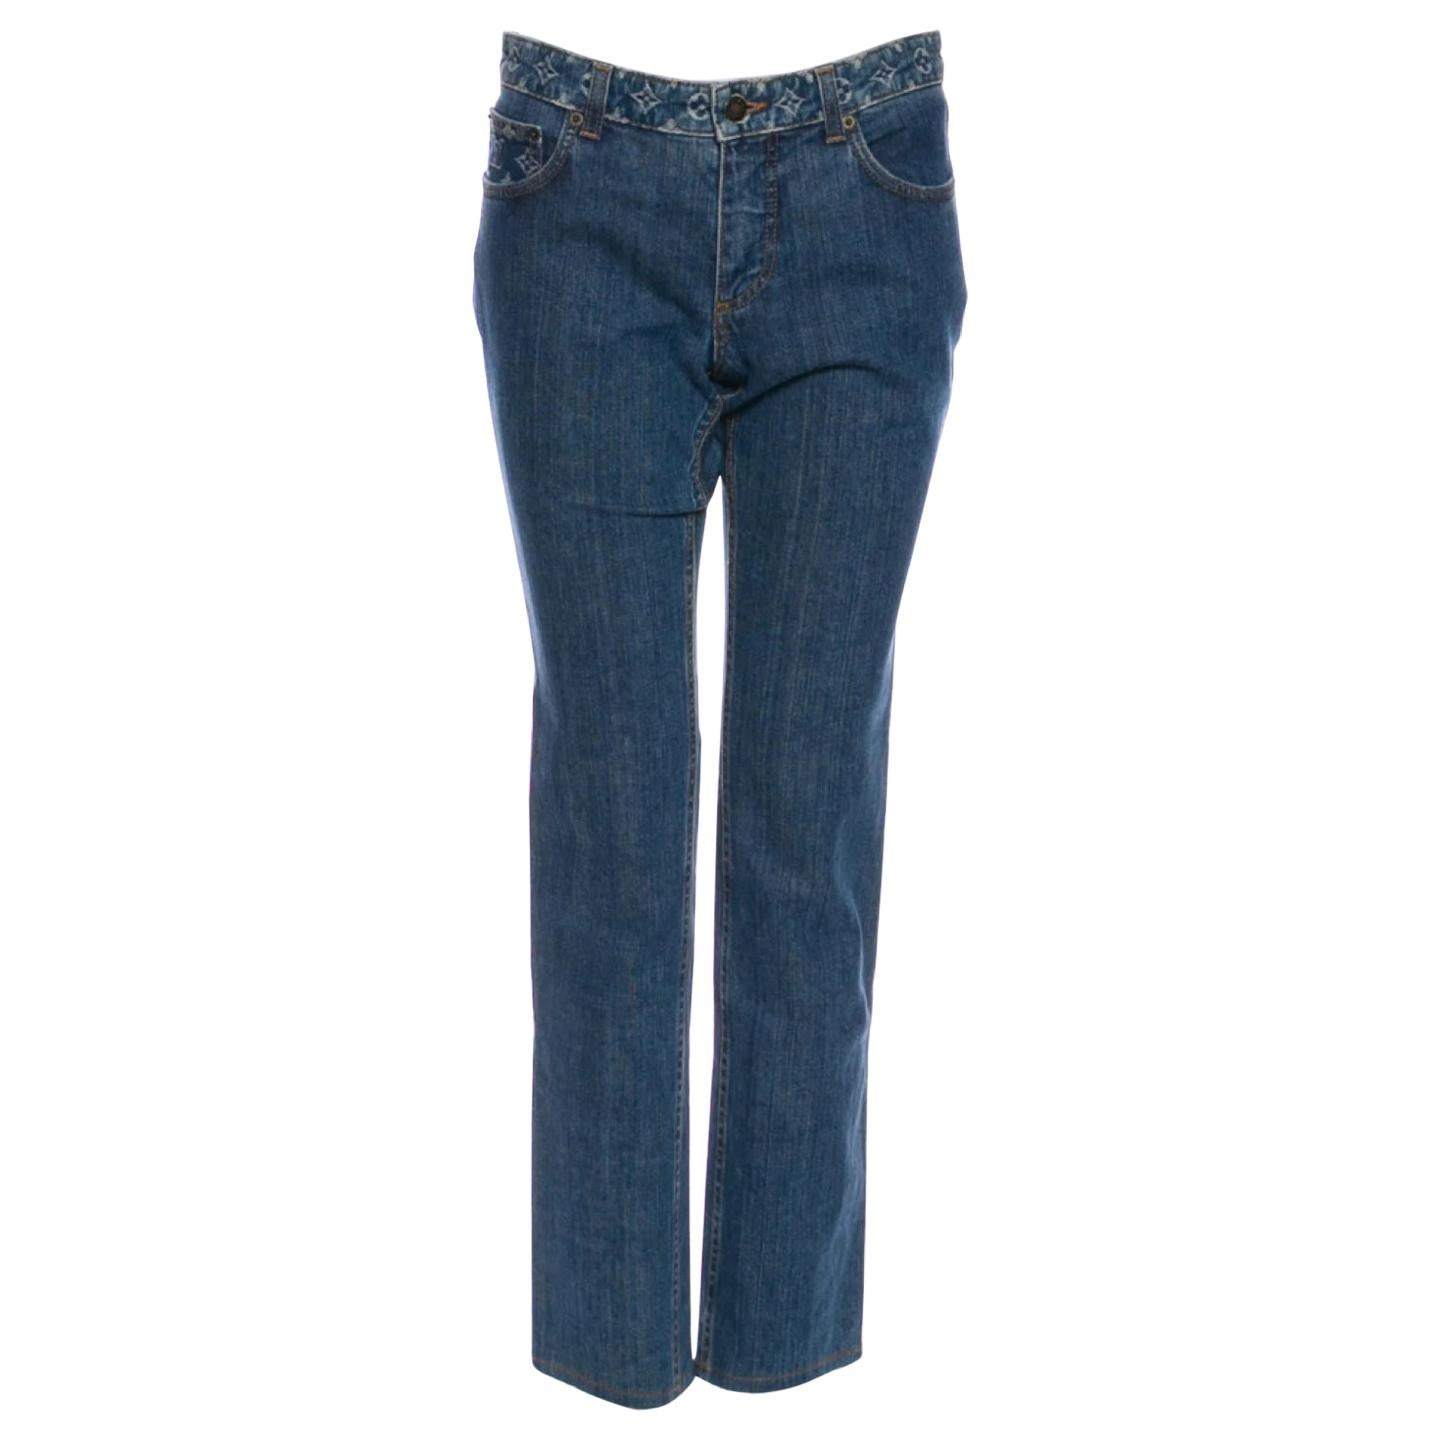  Louis Vuitton Mid-Rise Straight Leg Jeans (US 6 / FR 38)